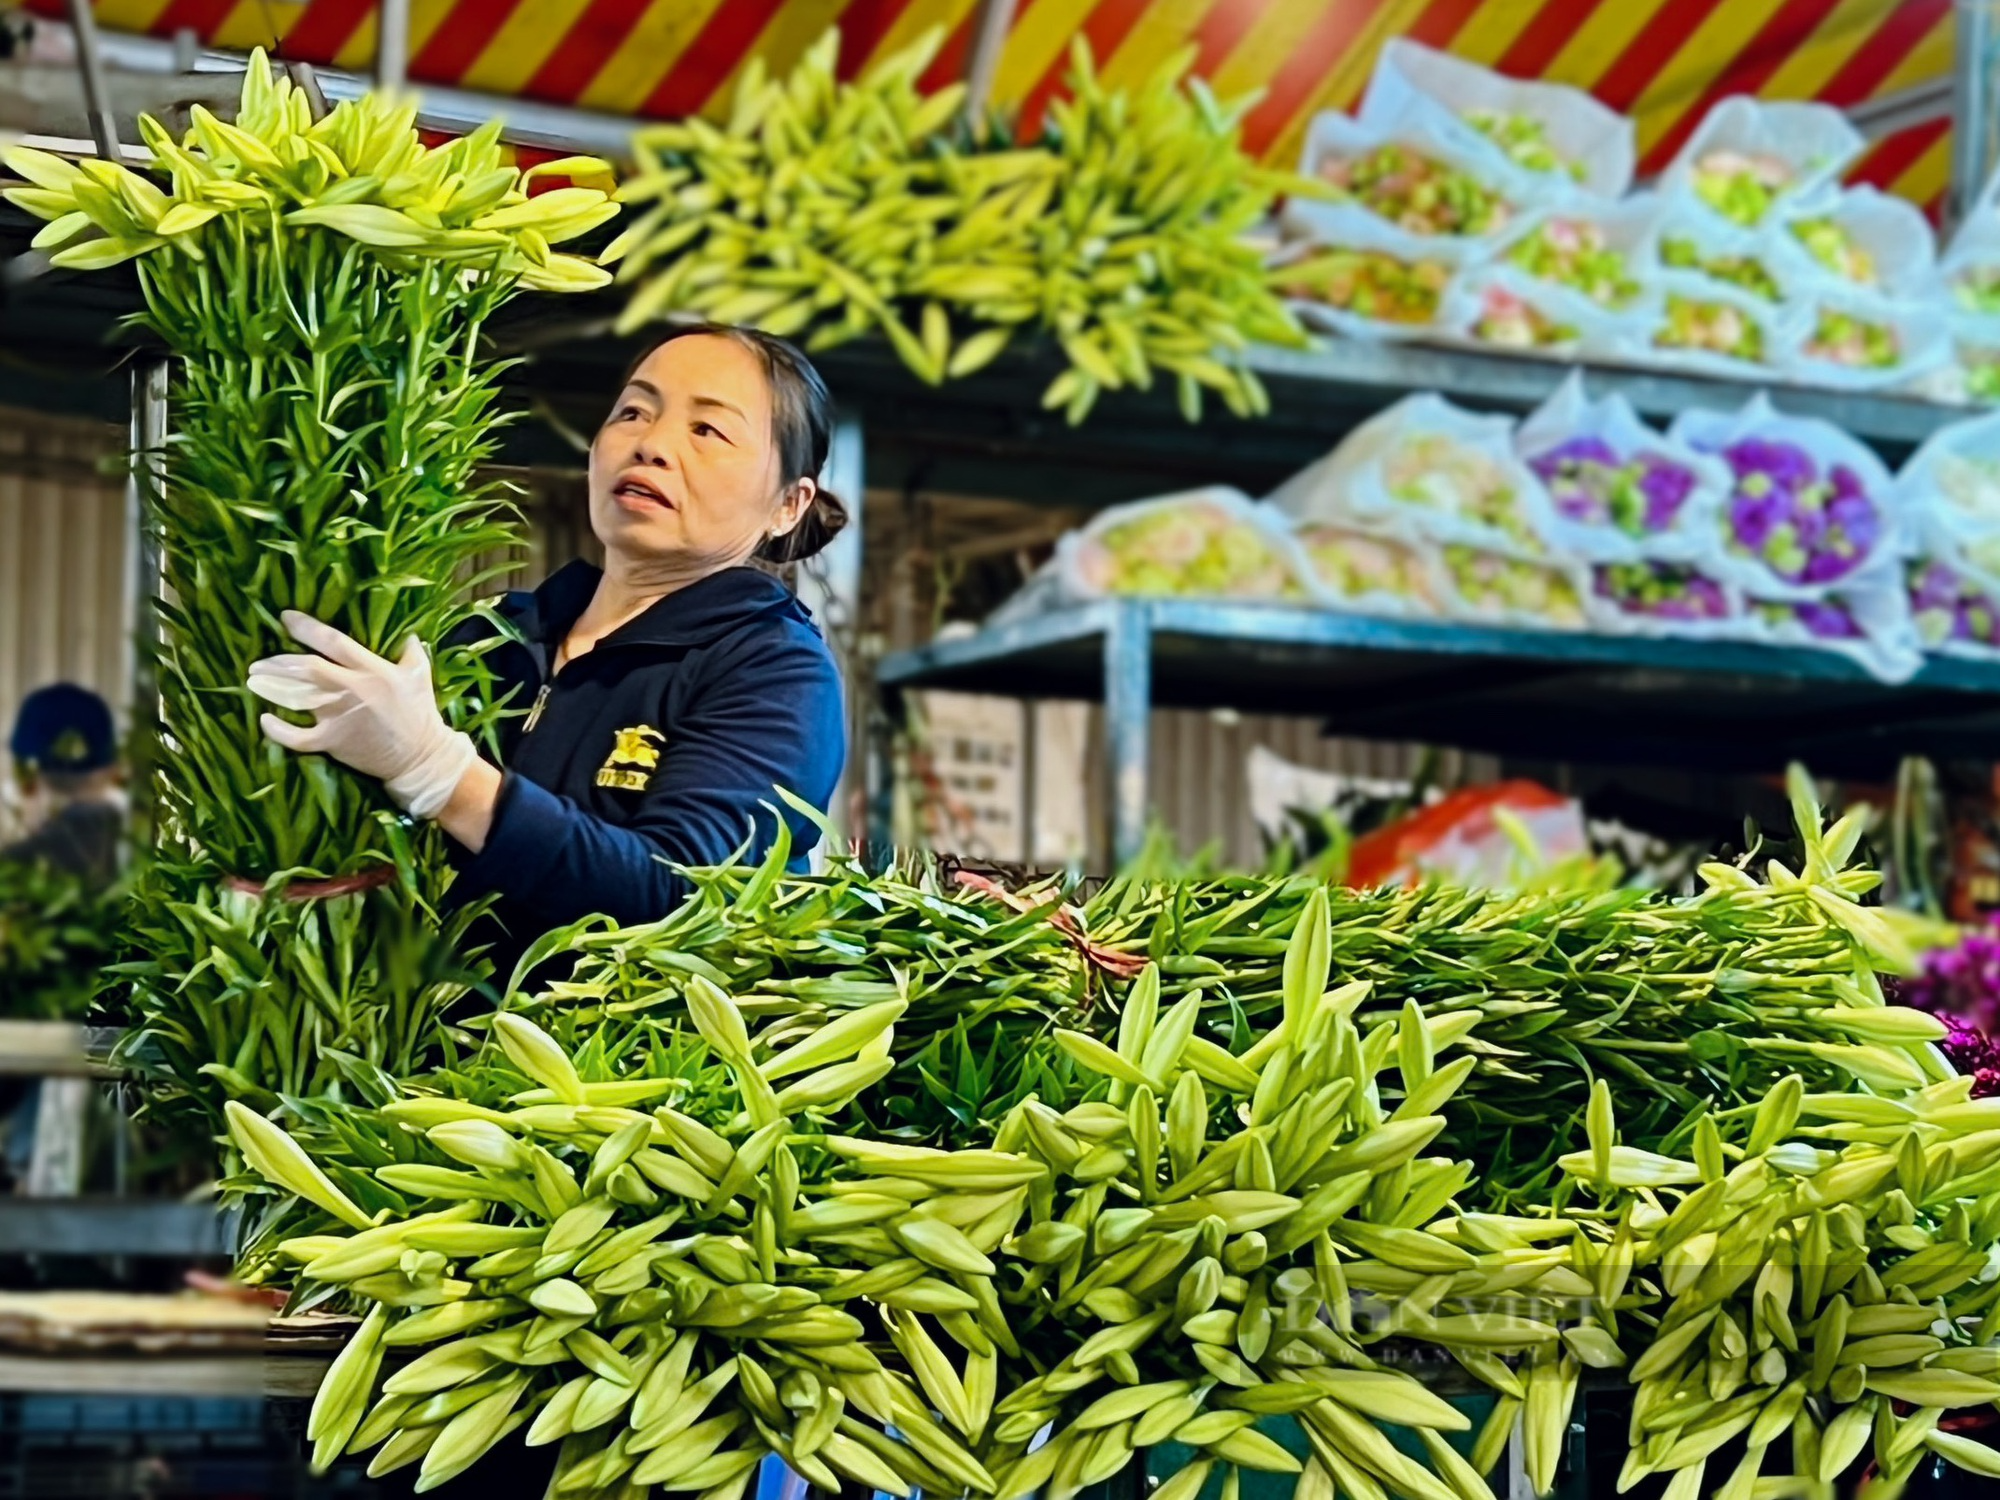 Hoa loa kèn bung nở, nông dân Hà Nội thu hàng chục triệu mỗi ngày - Ảnh 12.